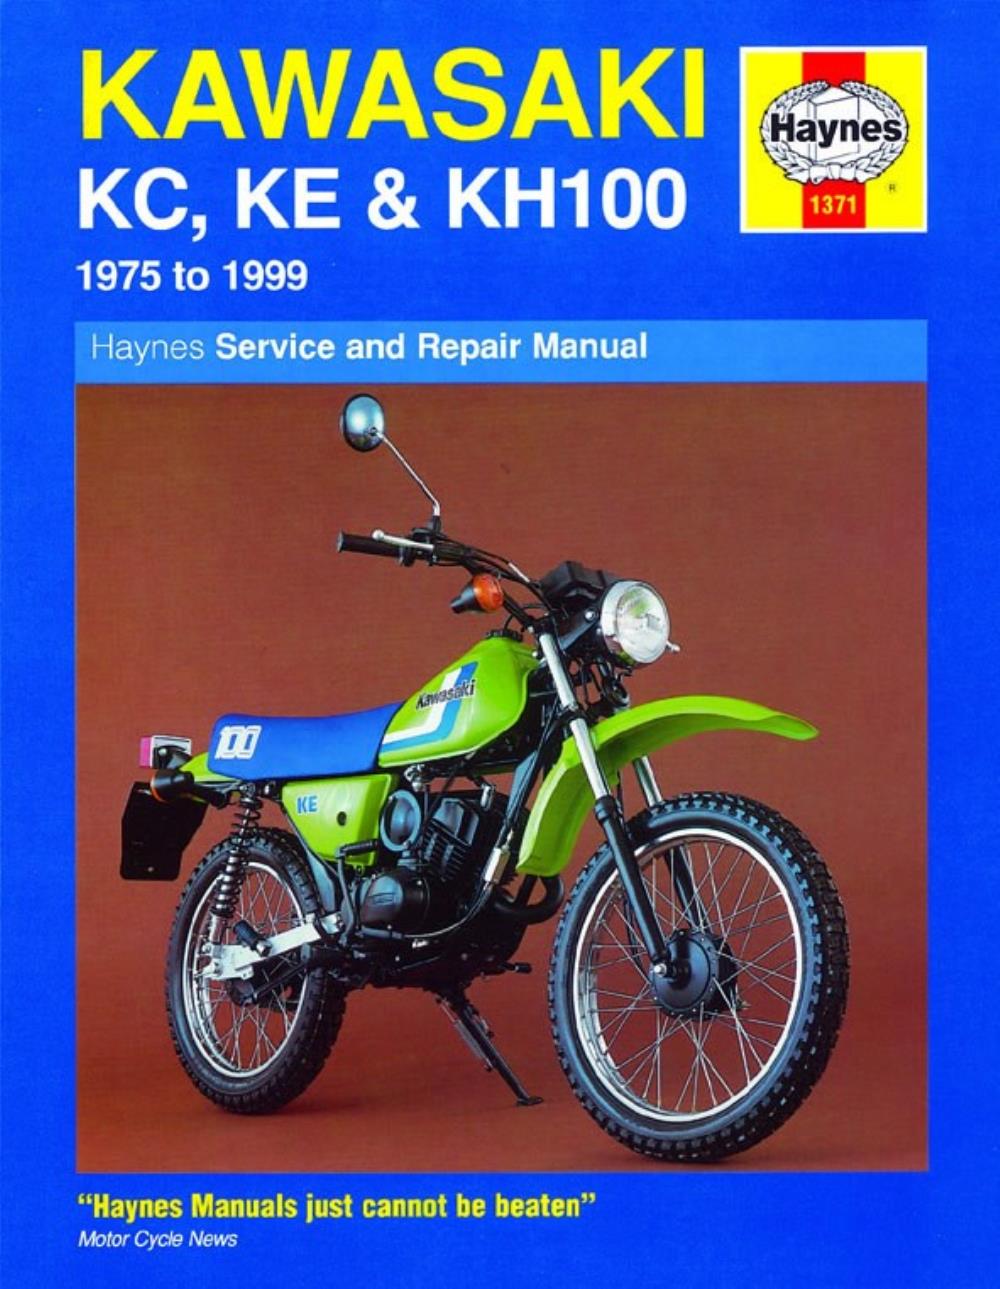 Manual Haynes for 1996 Kawasaki KE 100 B15 | eBay